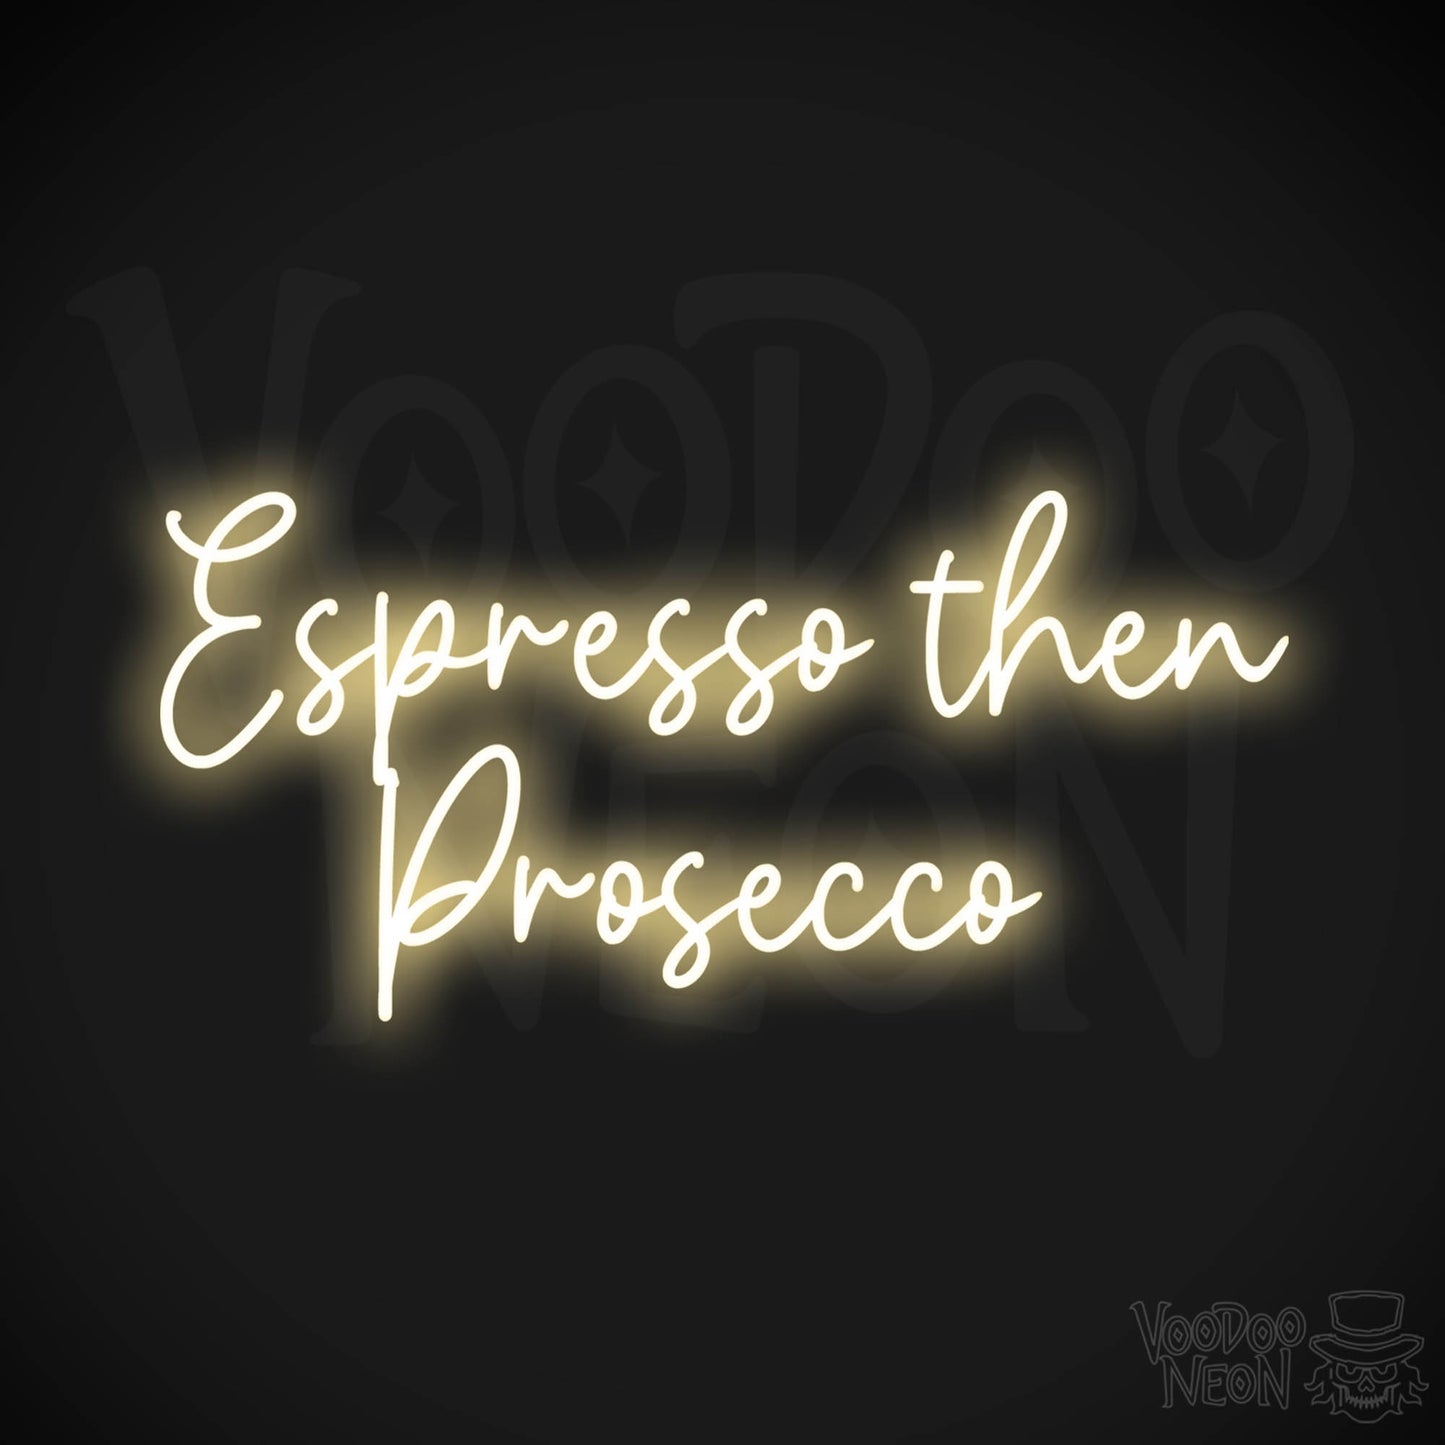 Espresso Then Prosecco LED Neon - Warm White